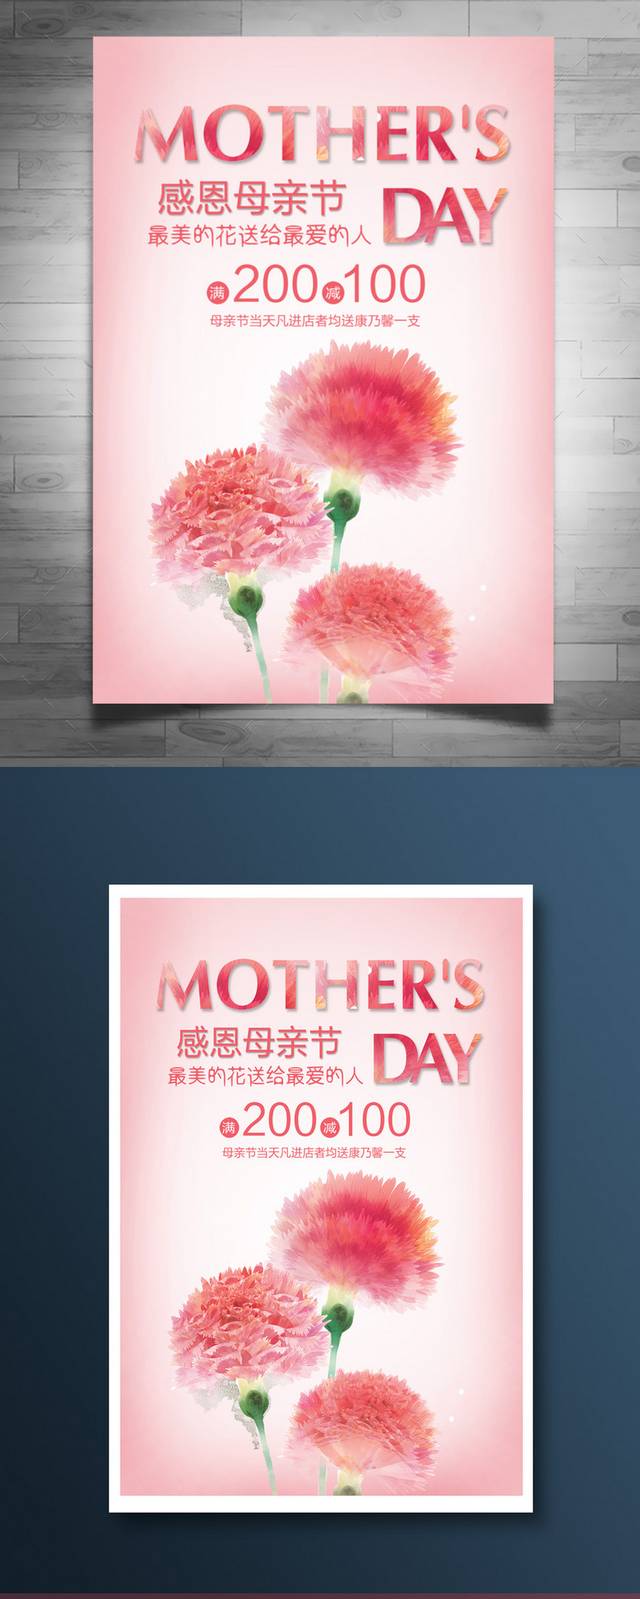 清新唯美母亲节海报设计